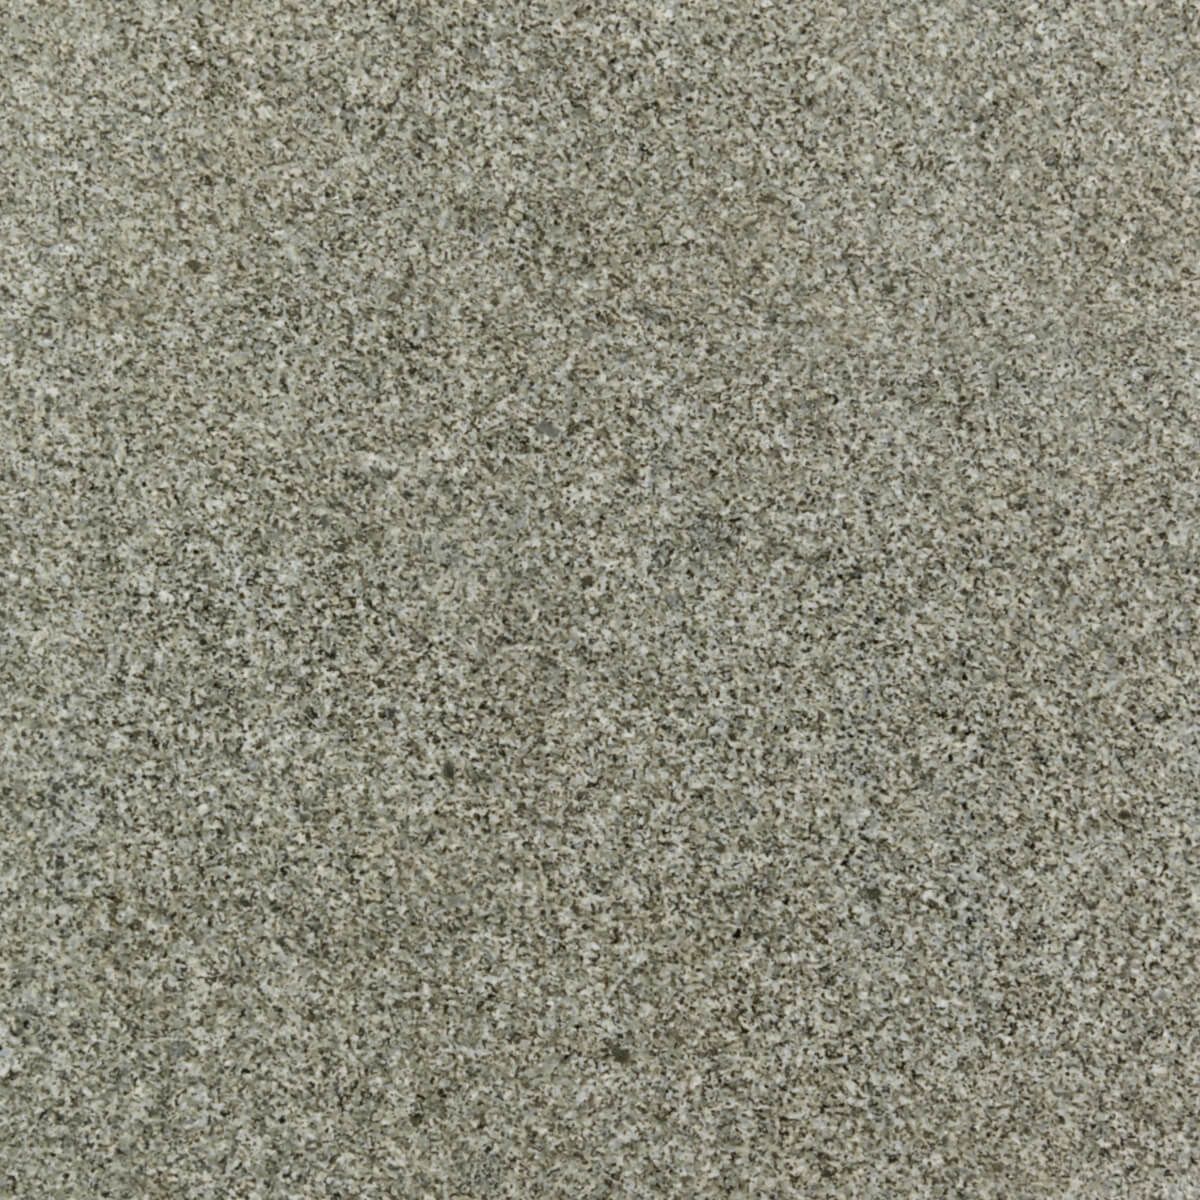 Płytki Granit G654 DIM płomieniowany 60x60x2 cm